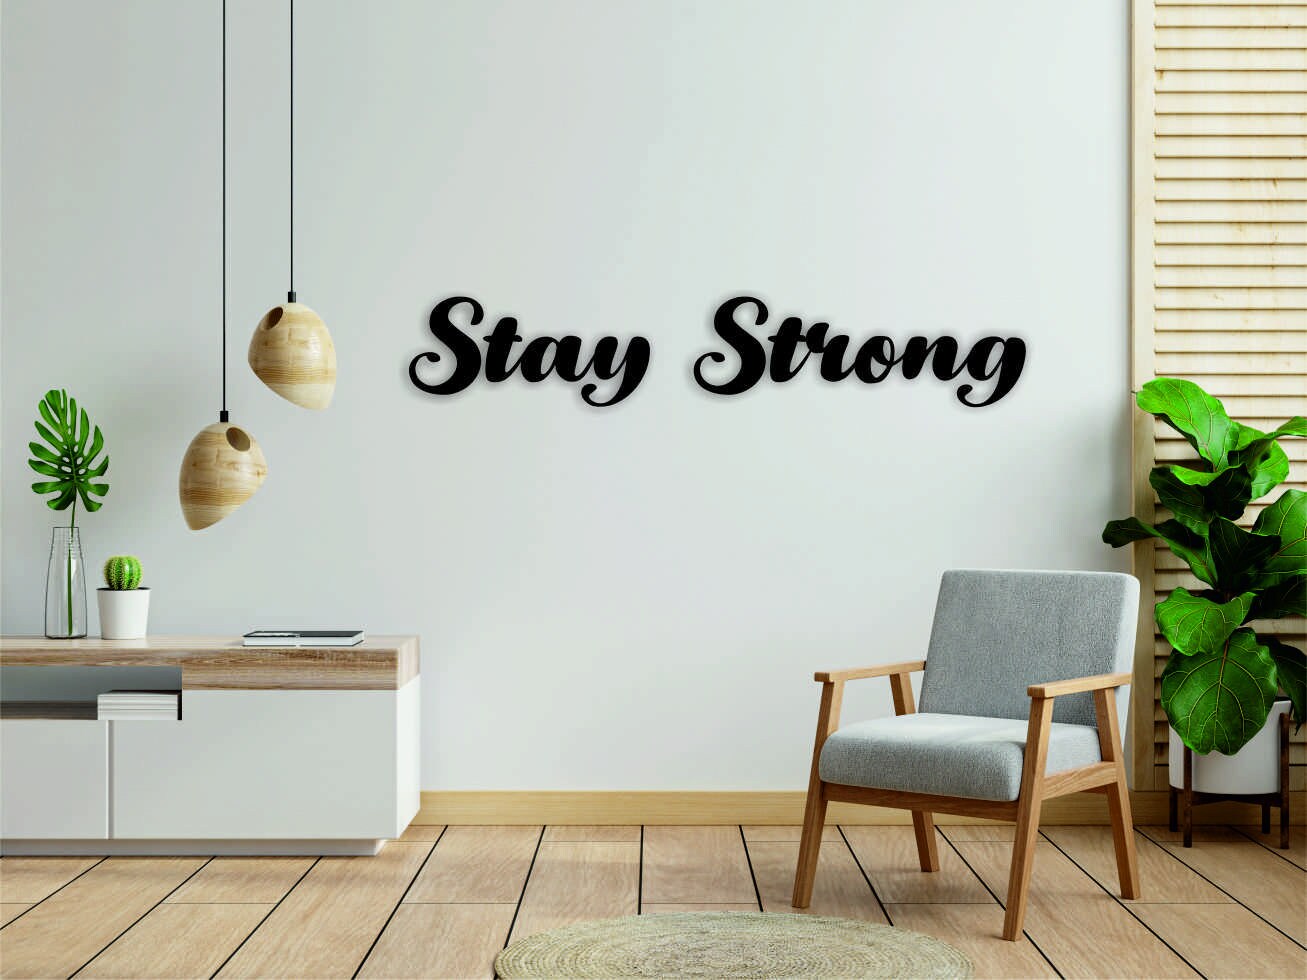 Stay Strong Wall Graffiti